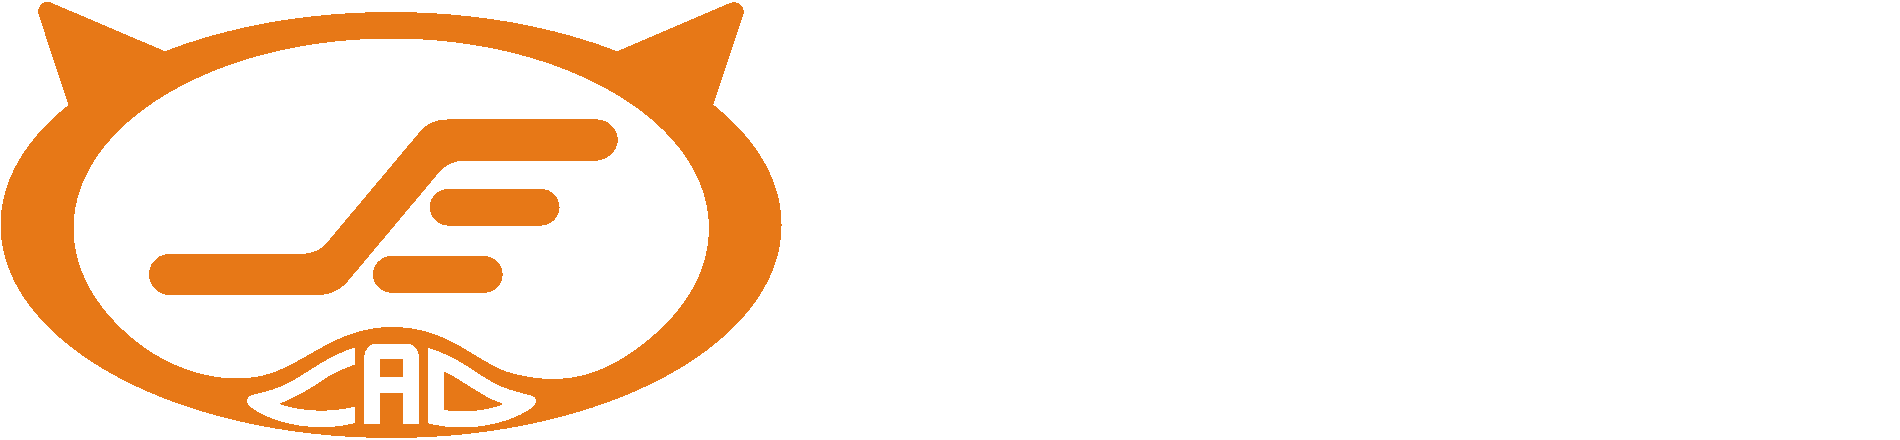 eCAD – Potsdam